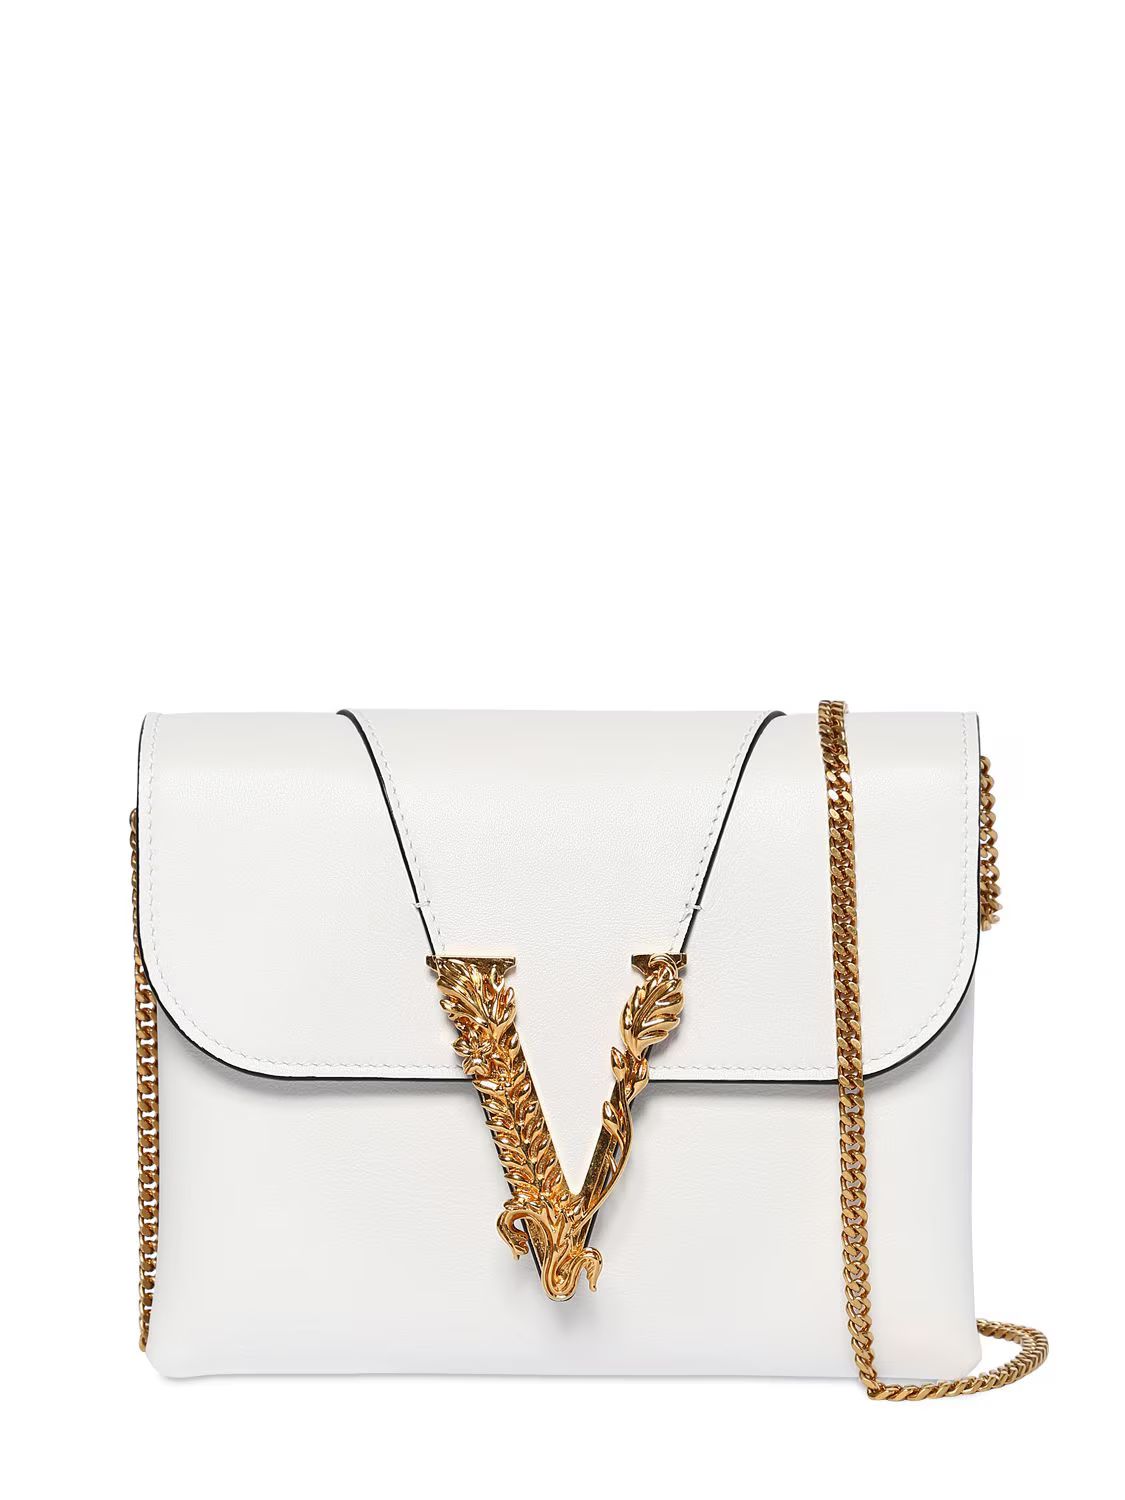 Versace - Virtus smooth leather wallet chain bag - White | Luisaviaroma | Luisaviaroma